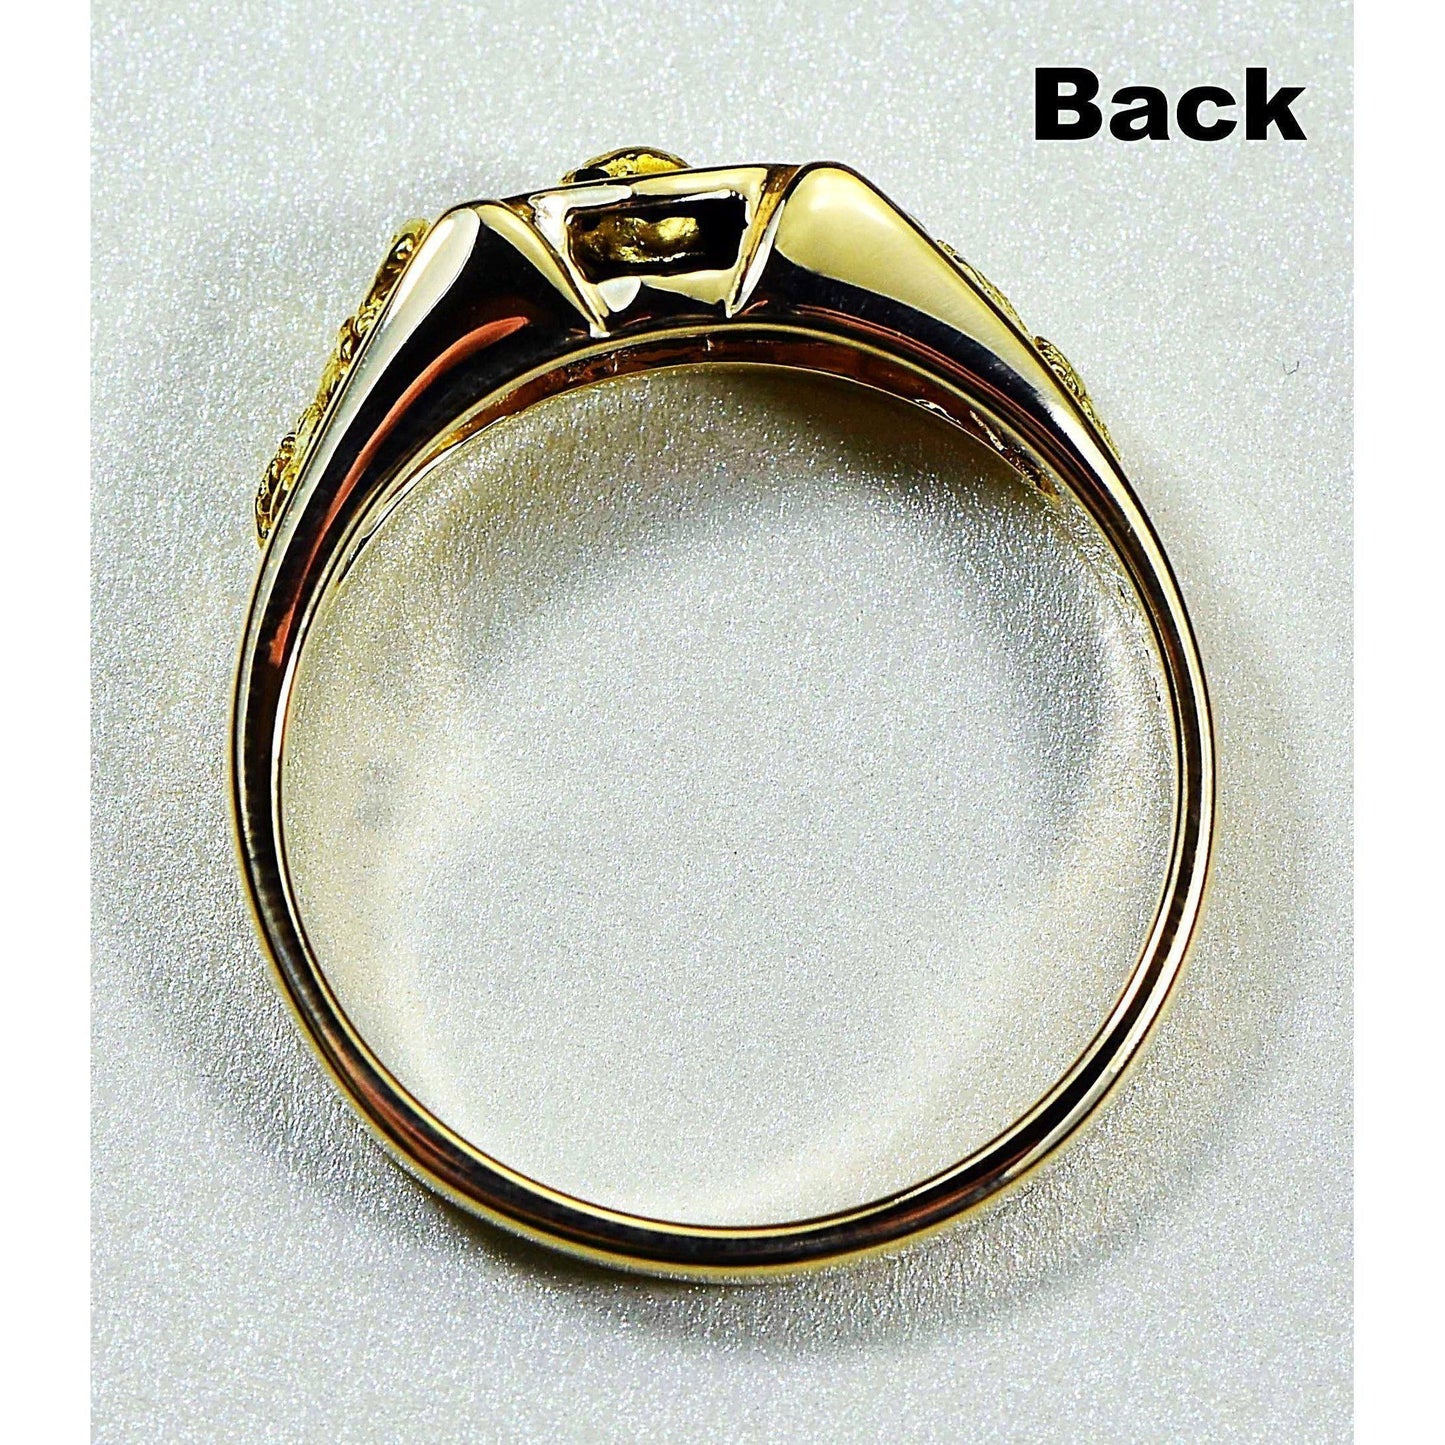 Gold Nugget Men's Ring - RM206-Destination Gold Detectors